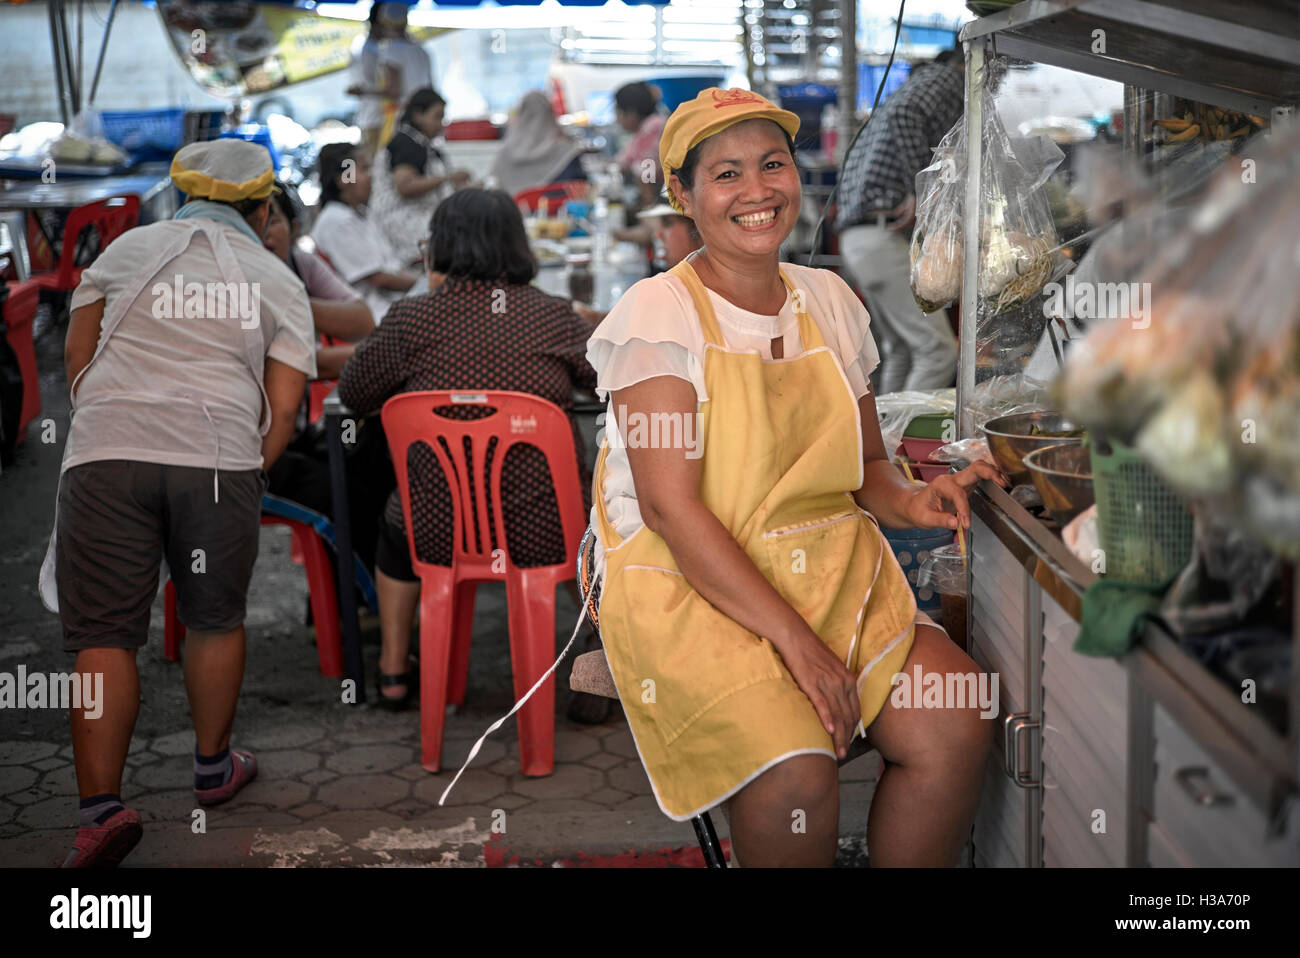 Thaïlande sourire. Un sourire heureux et femelle thaï food vendor à son échoppe de marché. Thaïlande S. E. l'Asie. Asian woman smiling Banque D'Images